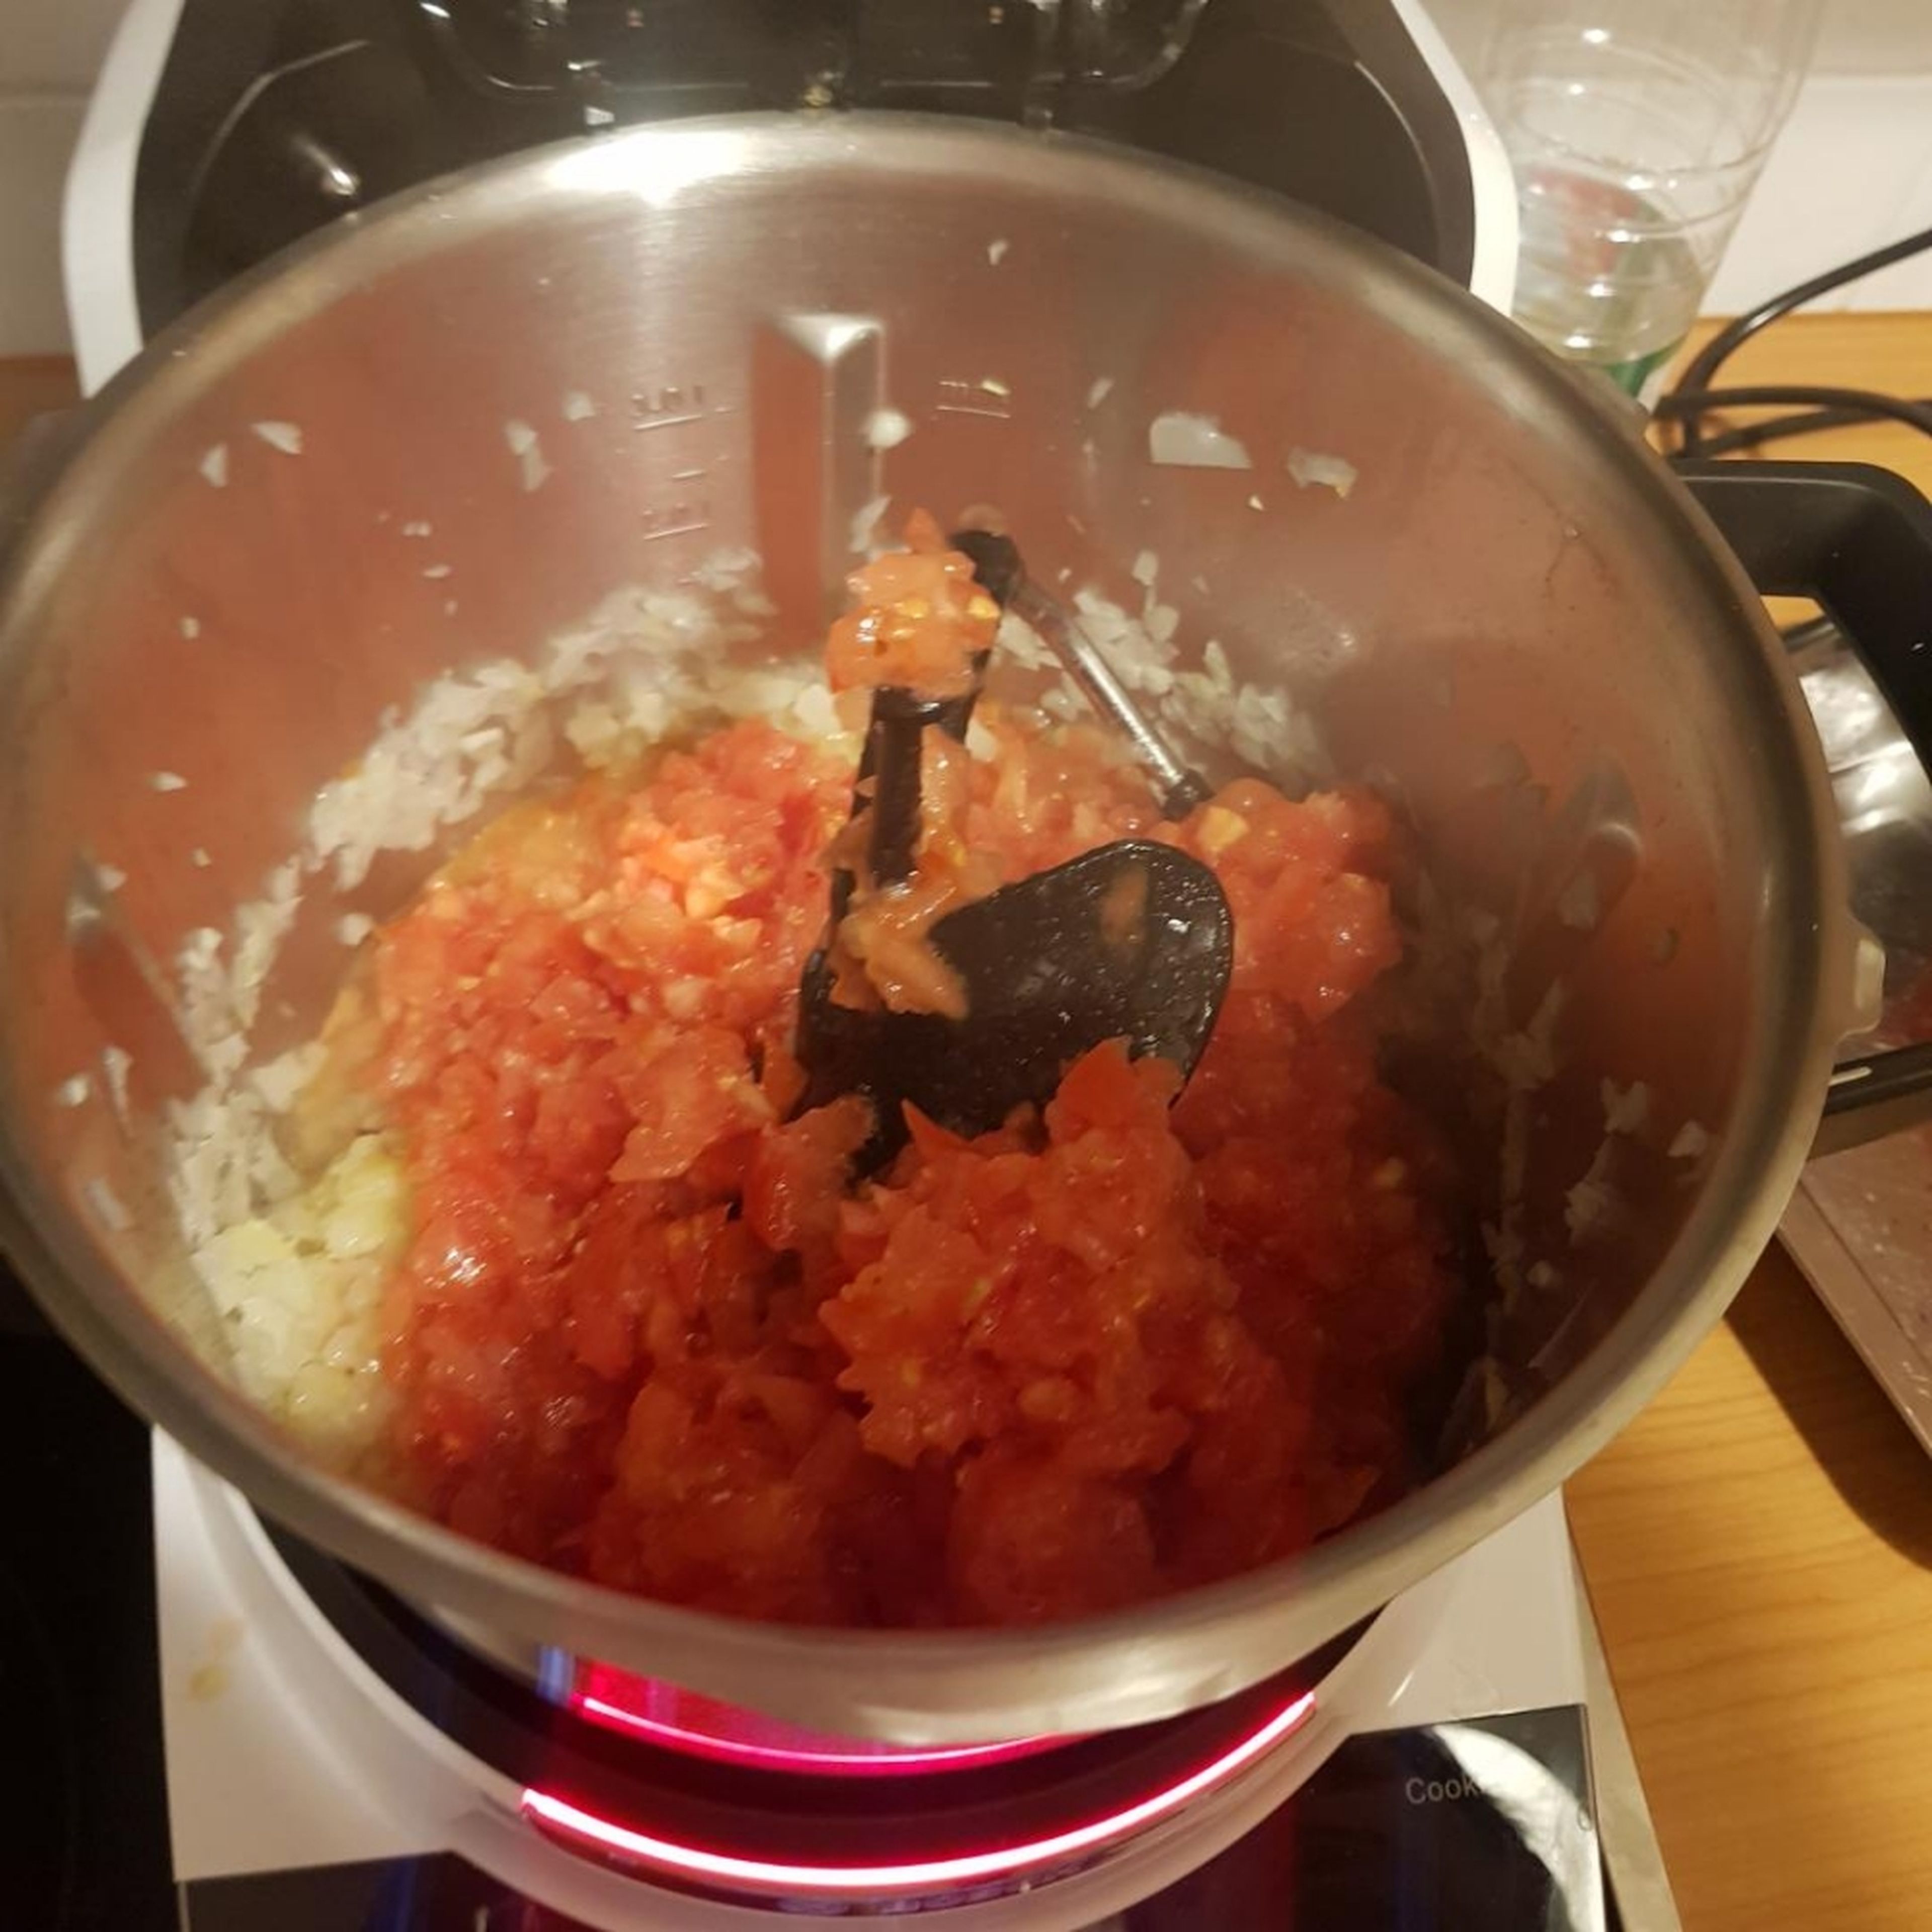 Deckel öffnen und die vorher zerkleinerten Tomaten und frische Chili, die getrocknete Chili, das Tomatenmark, Salz und Pfeffer hineingeben. Das Wasser einwiegen und den Deckel schließen (ohne Messbecher). Alle Zutaten im Topf anrösten (3-D Rührer | Stufe 5 | 200°C | 8 min).